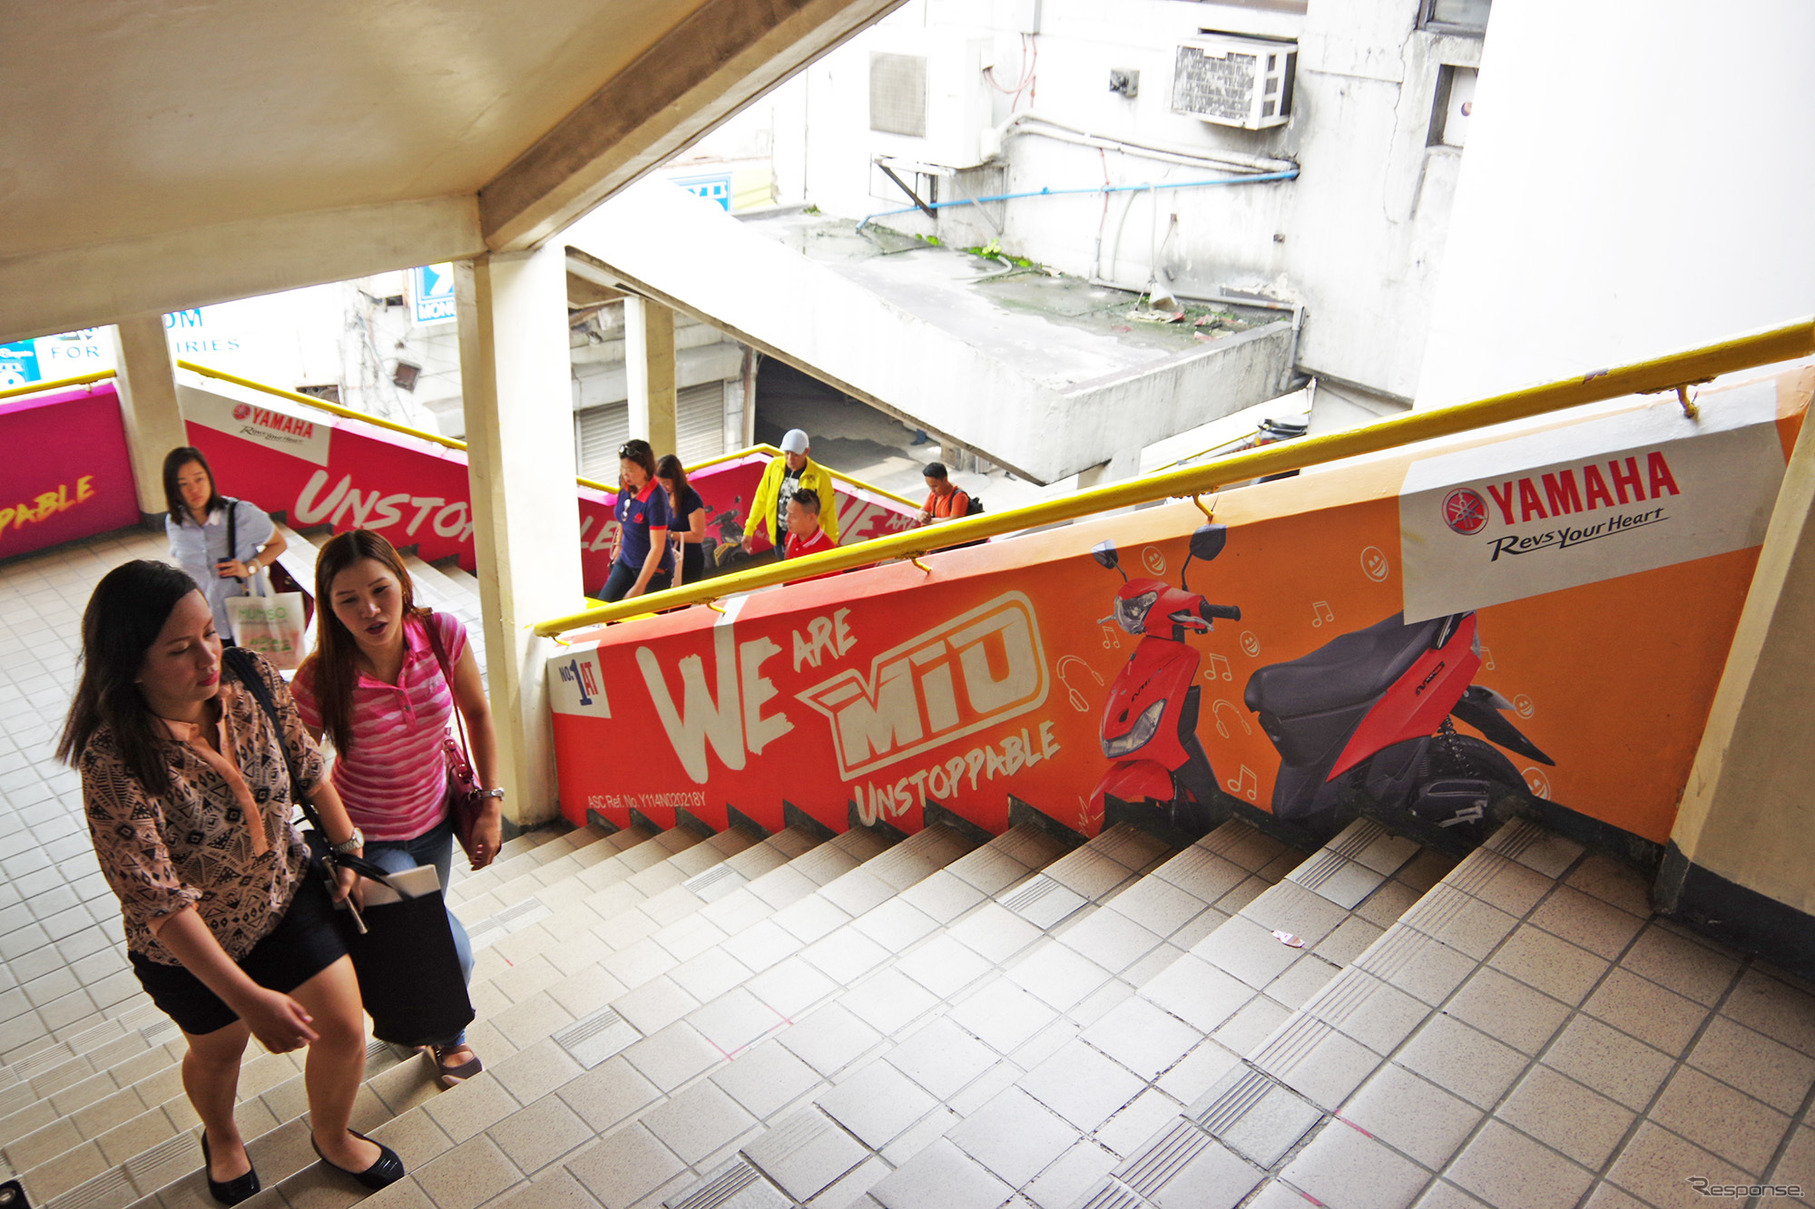 ヤマハモニュメント駅の階段にも、主力車種『MIO』の広告が